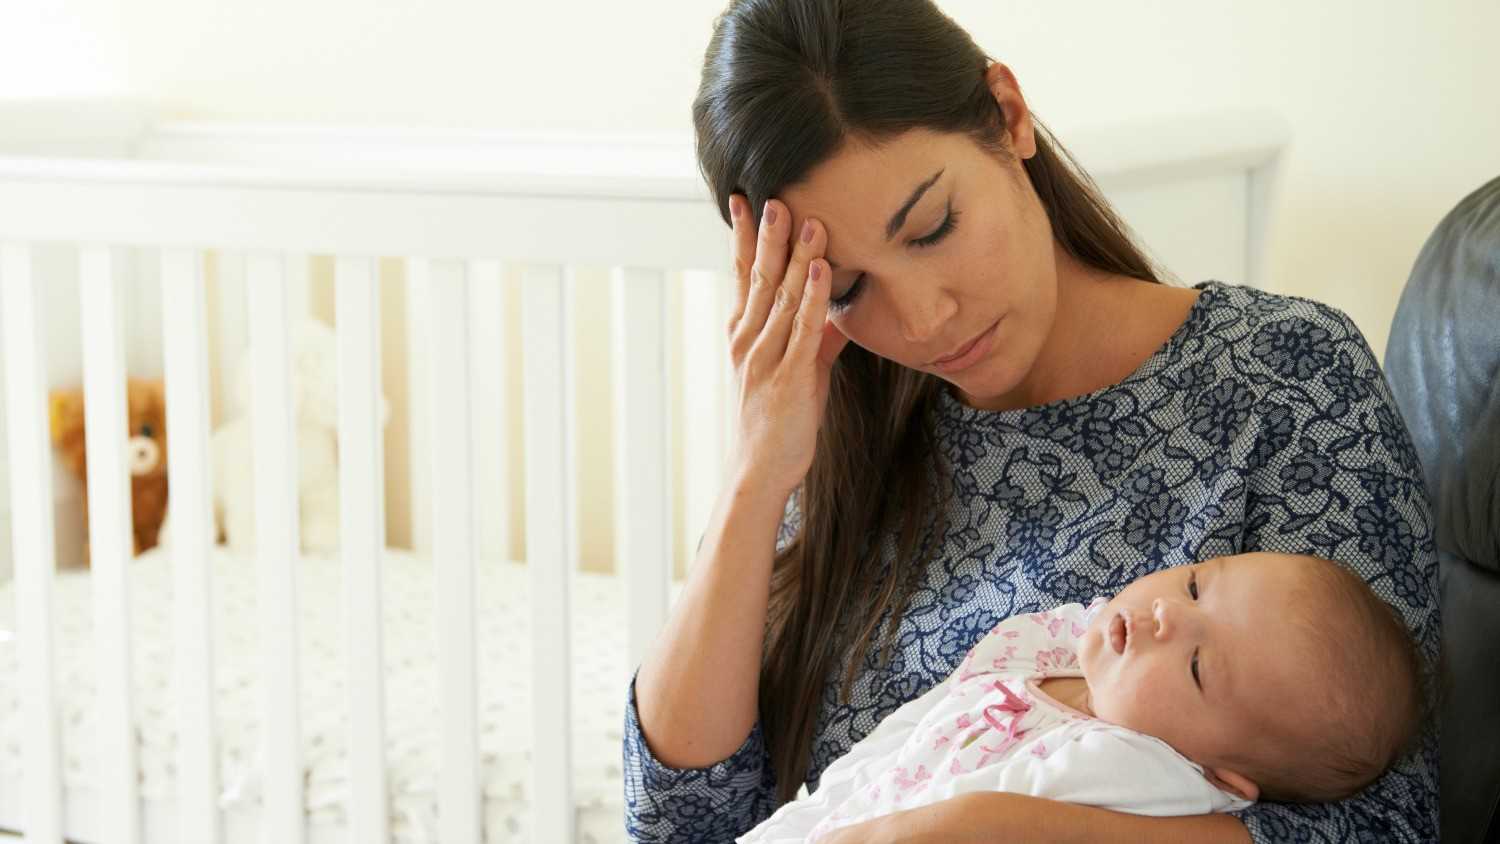 Руководство для матери по лечению послеродовой депрессии и бэби-блюза